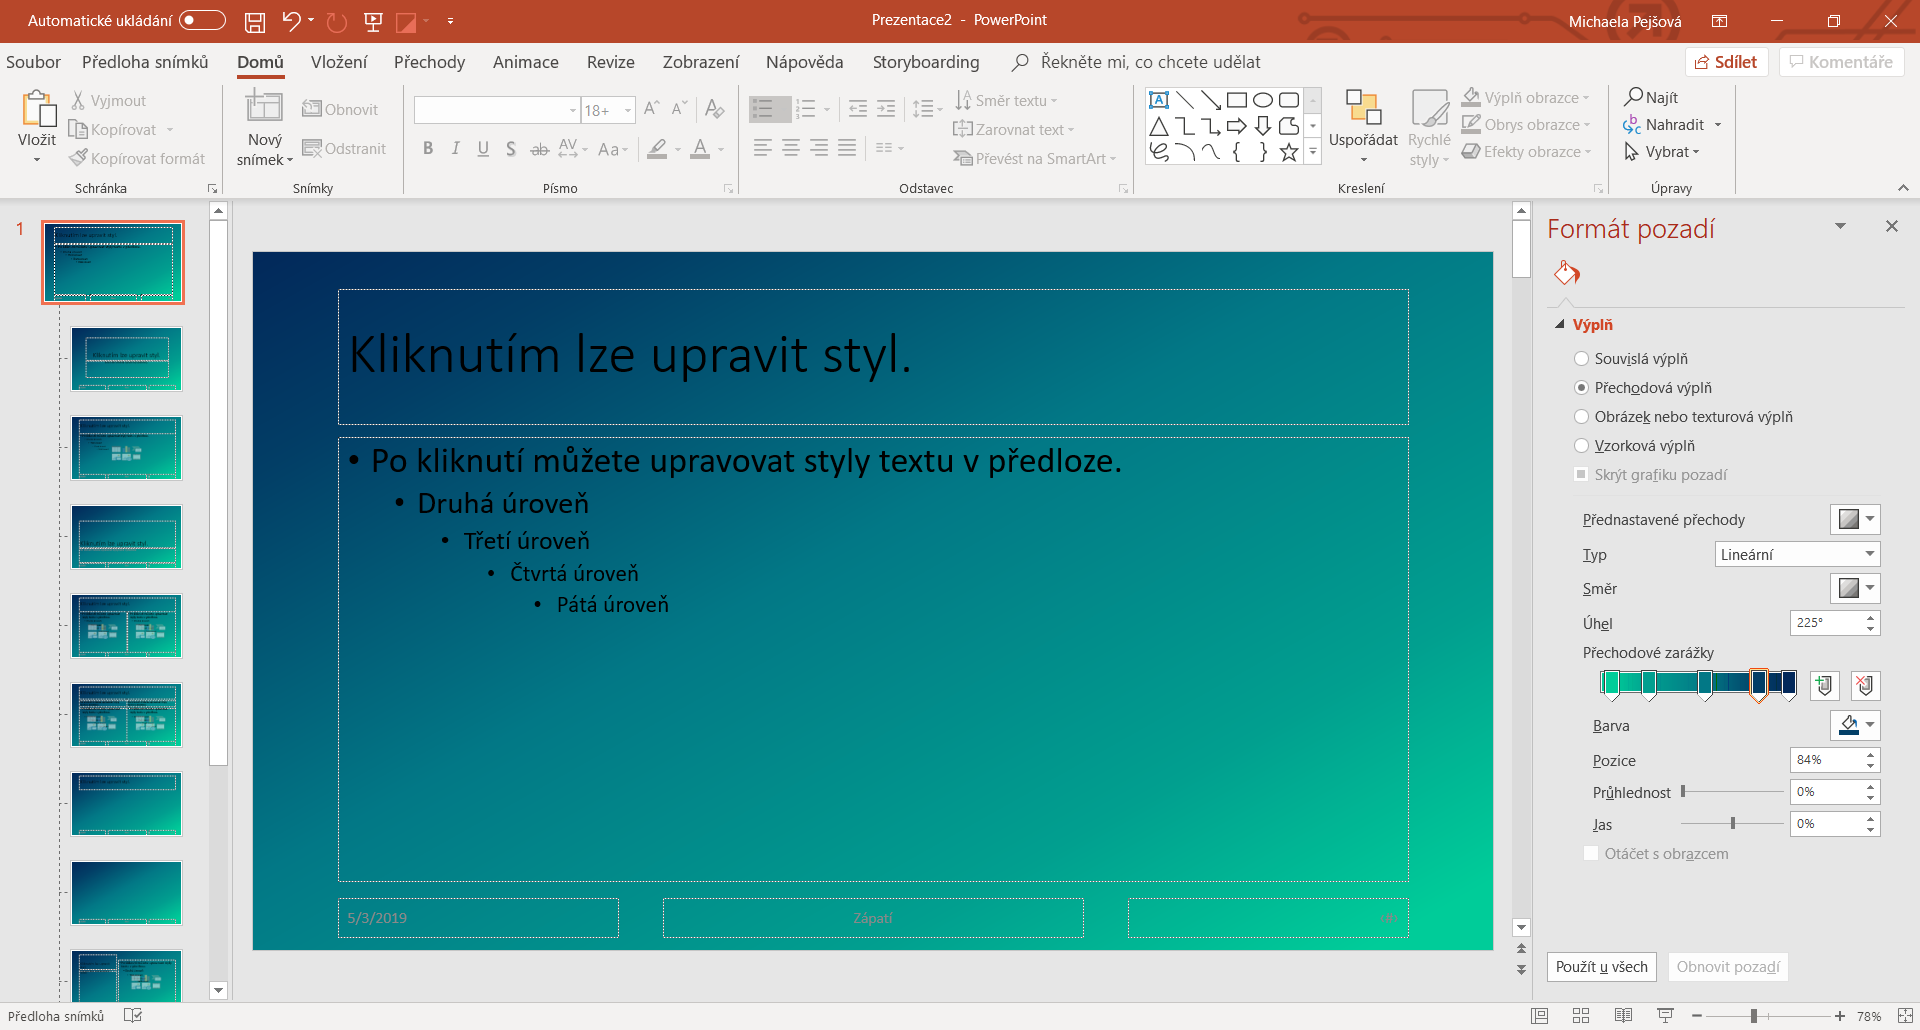 Úprava pozadia predlohy snímky v Microsoft PowerPoint - Základy Microsoft PowerPoint